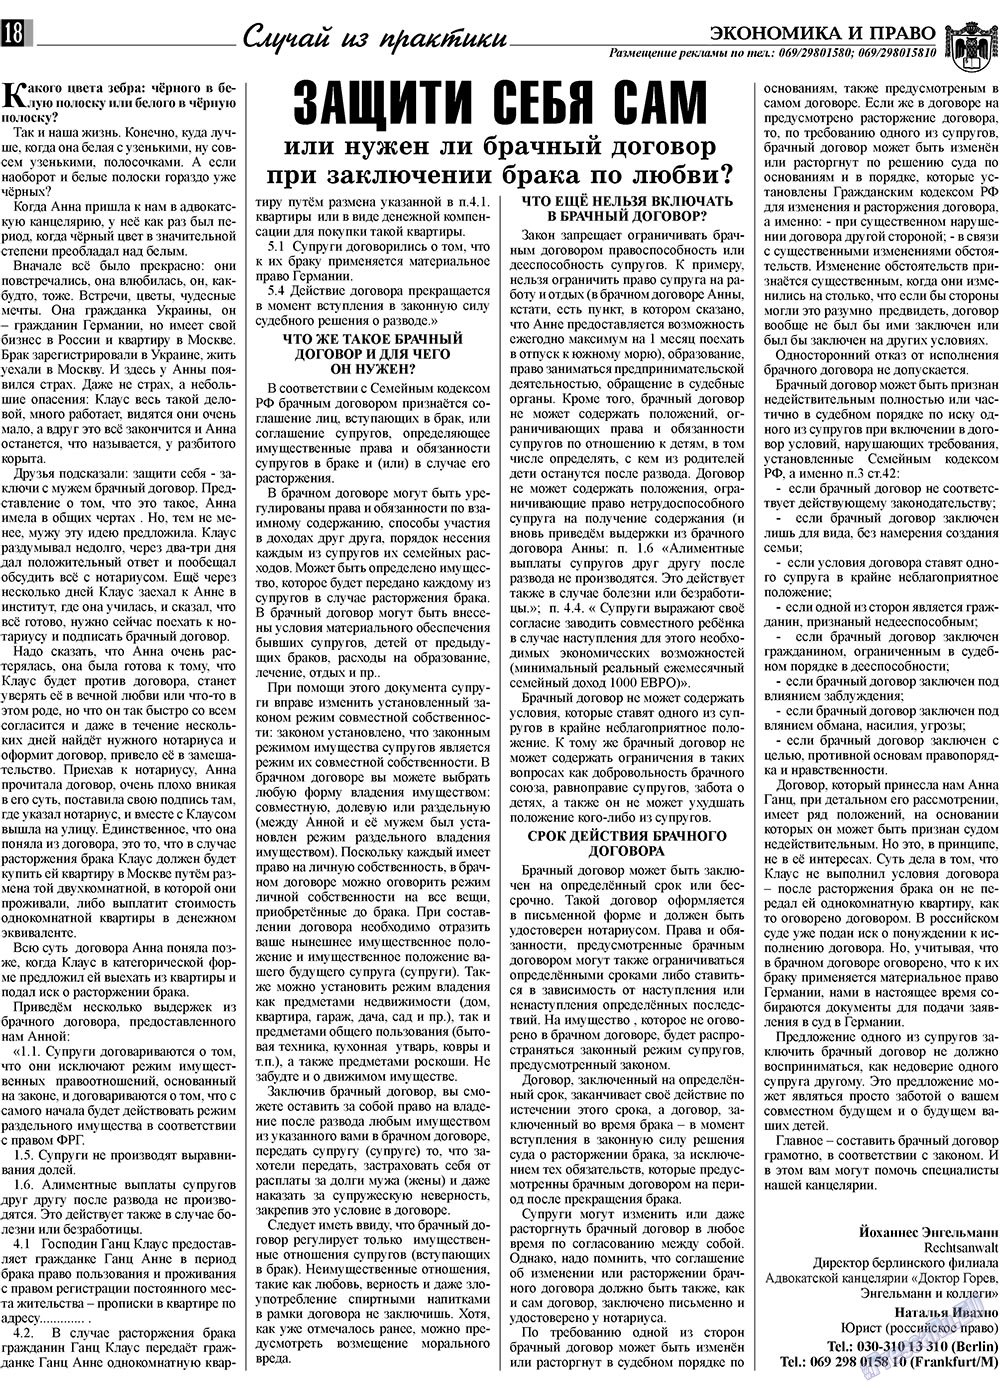 Экономика и право, газета. 2009 №3 стр.18